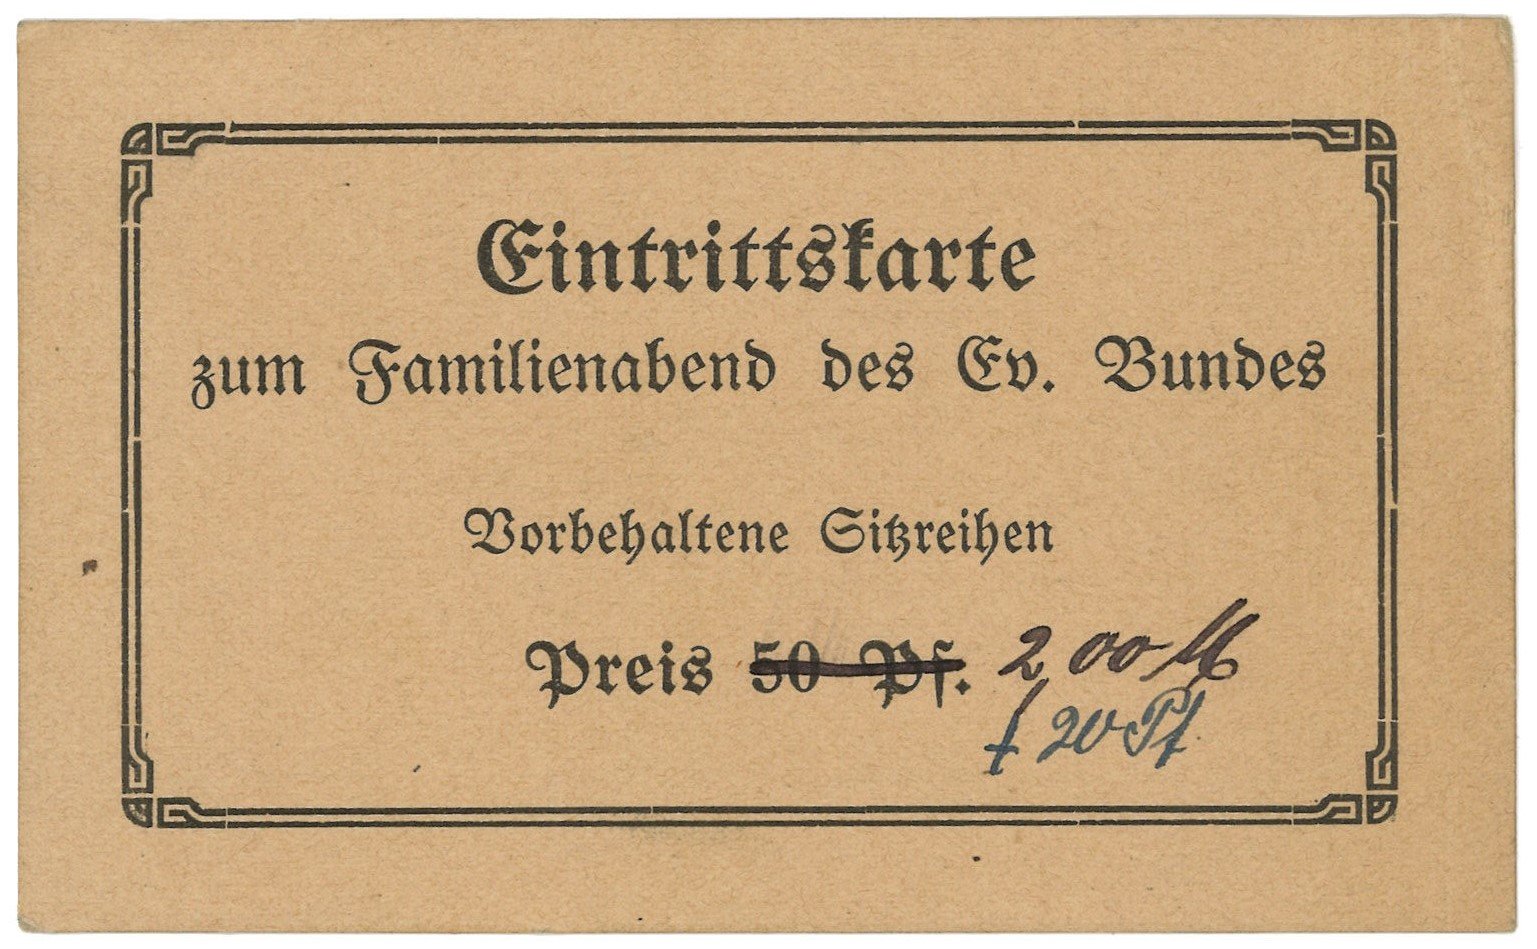 Familienabend des Evangelischen Bundes (Potsdam, um 1920?) (Landesgeschichtliche Vereinigung für die Mark Brandenburg e.V., Archiv CC BY)